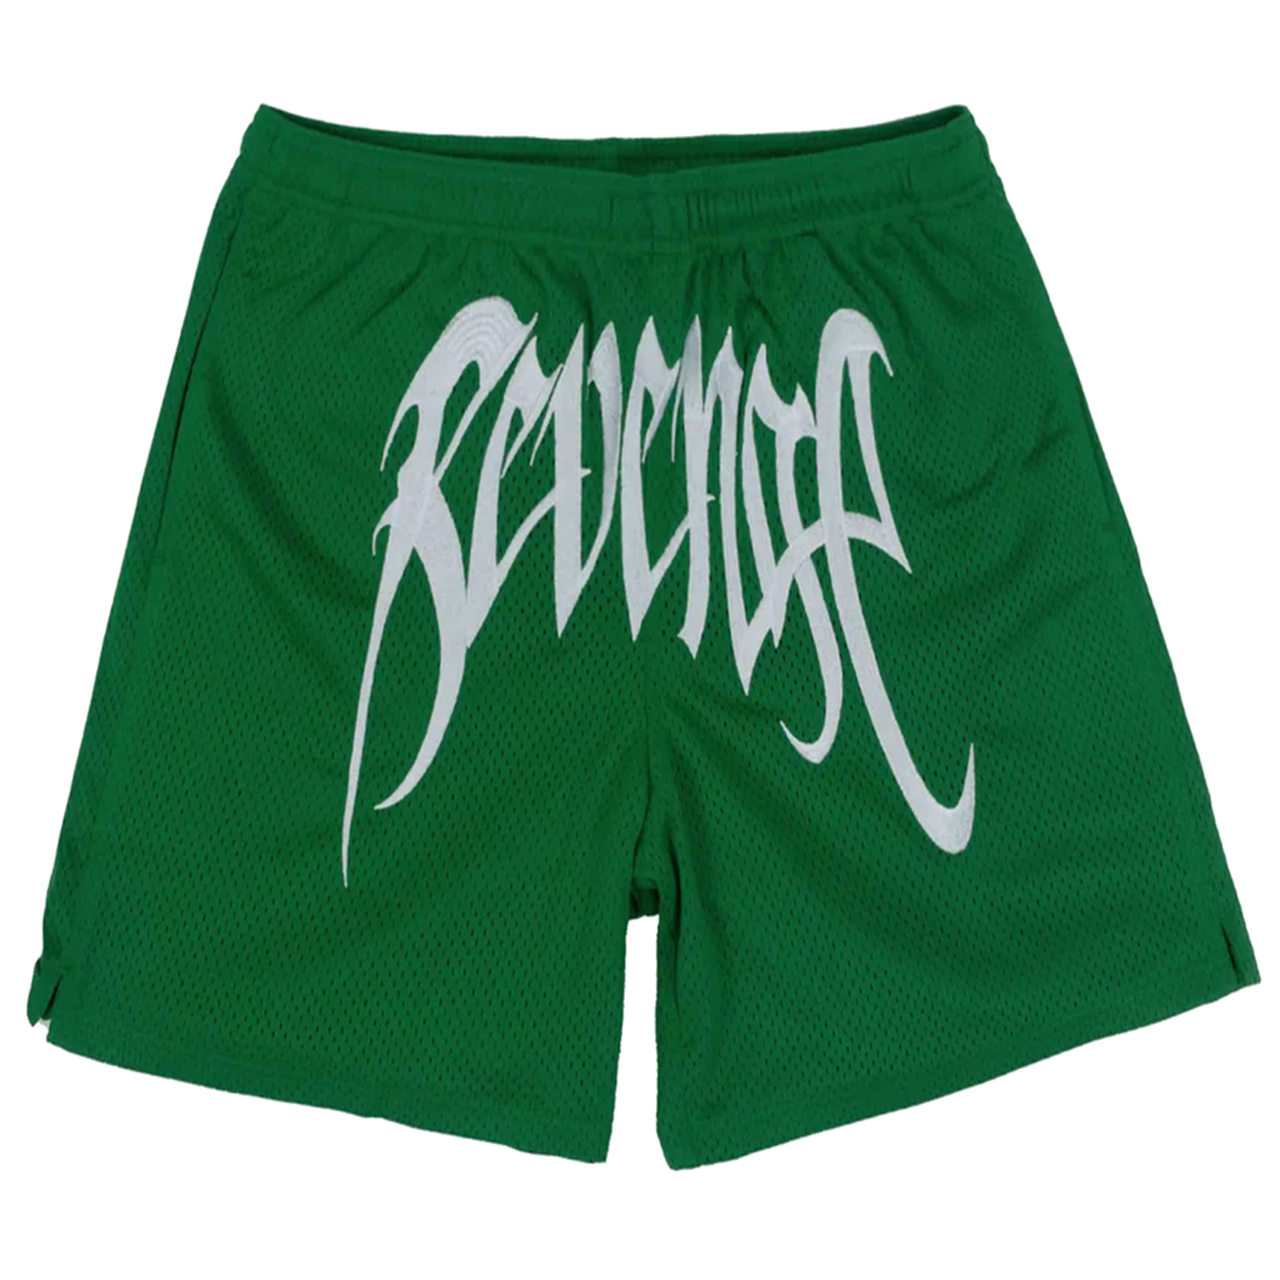 Revenge Embroidered Mesh Shorts Green